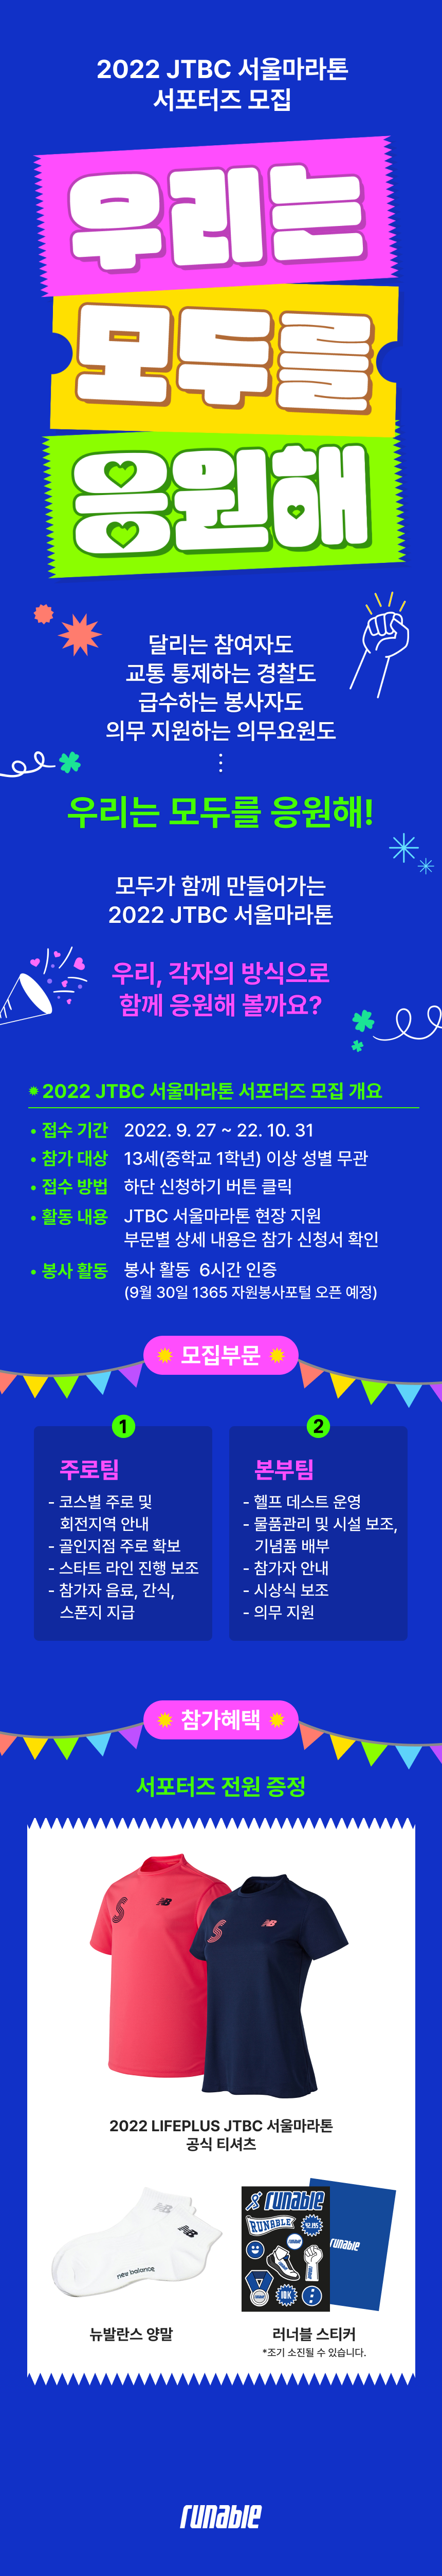 2022 LIFEPLUS JTBC 서울마라톤 제마 서포터즈 모집